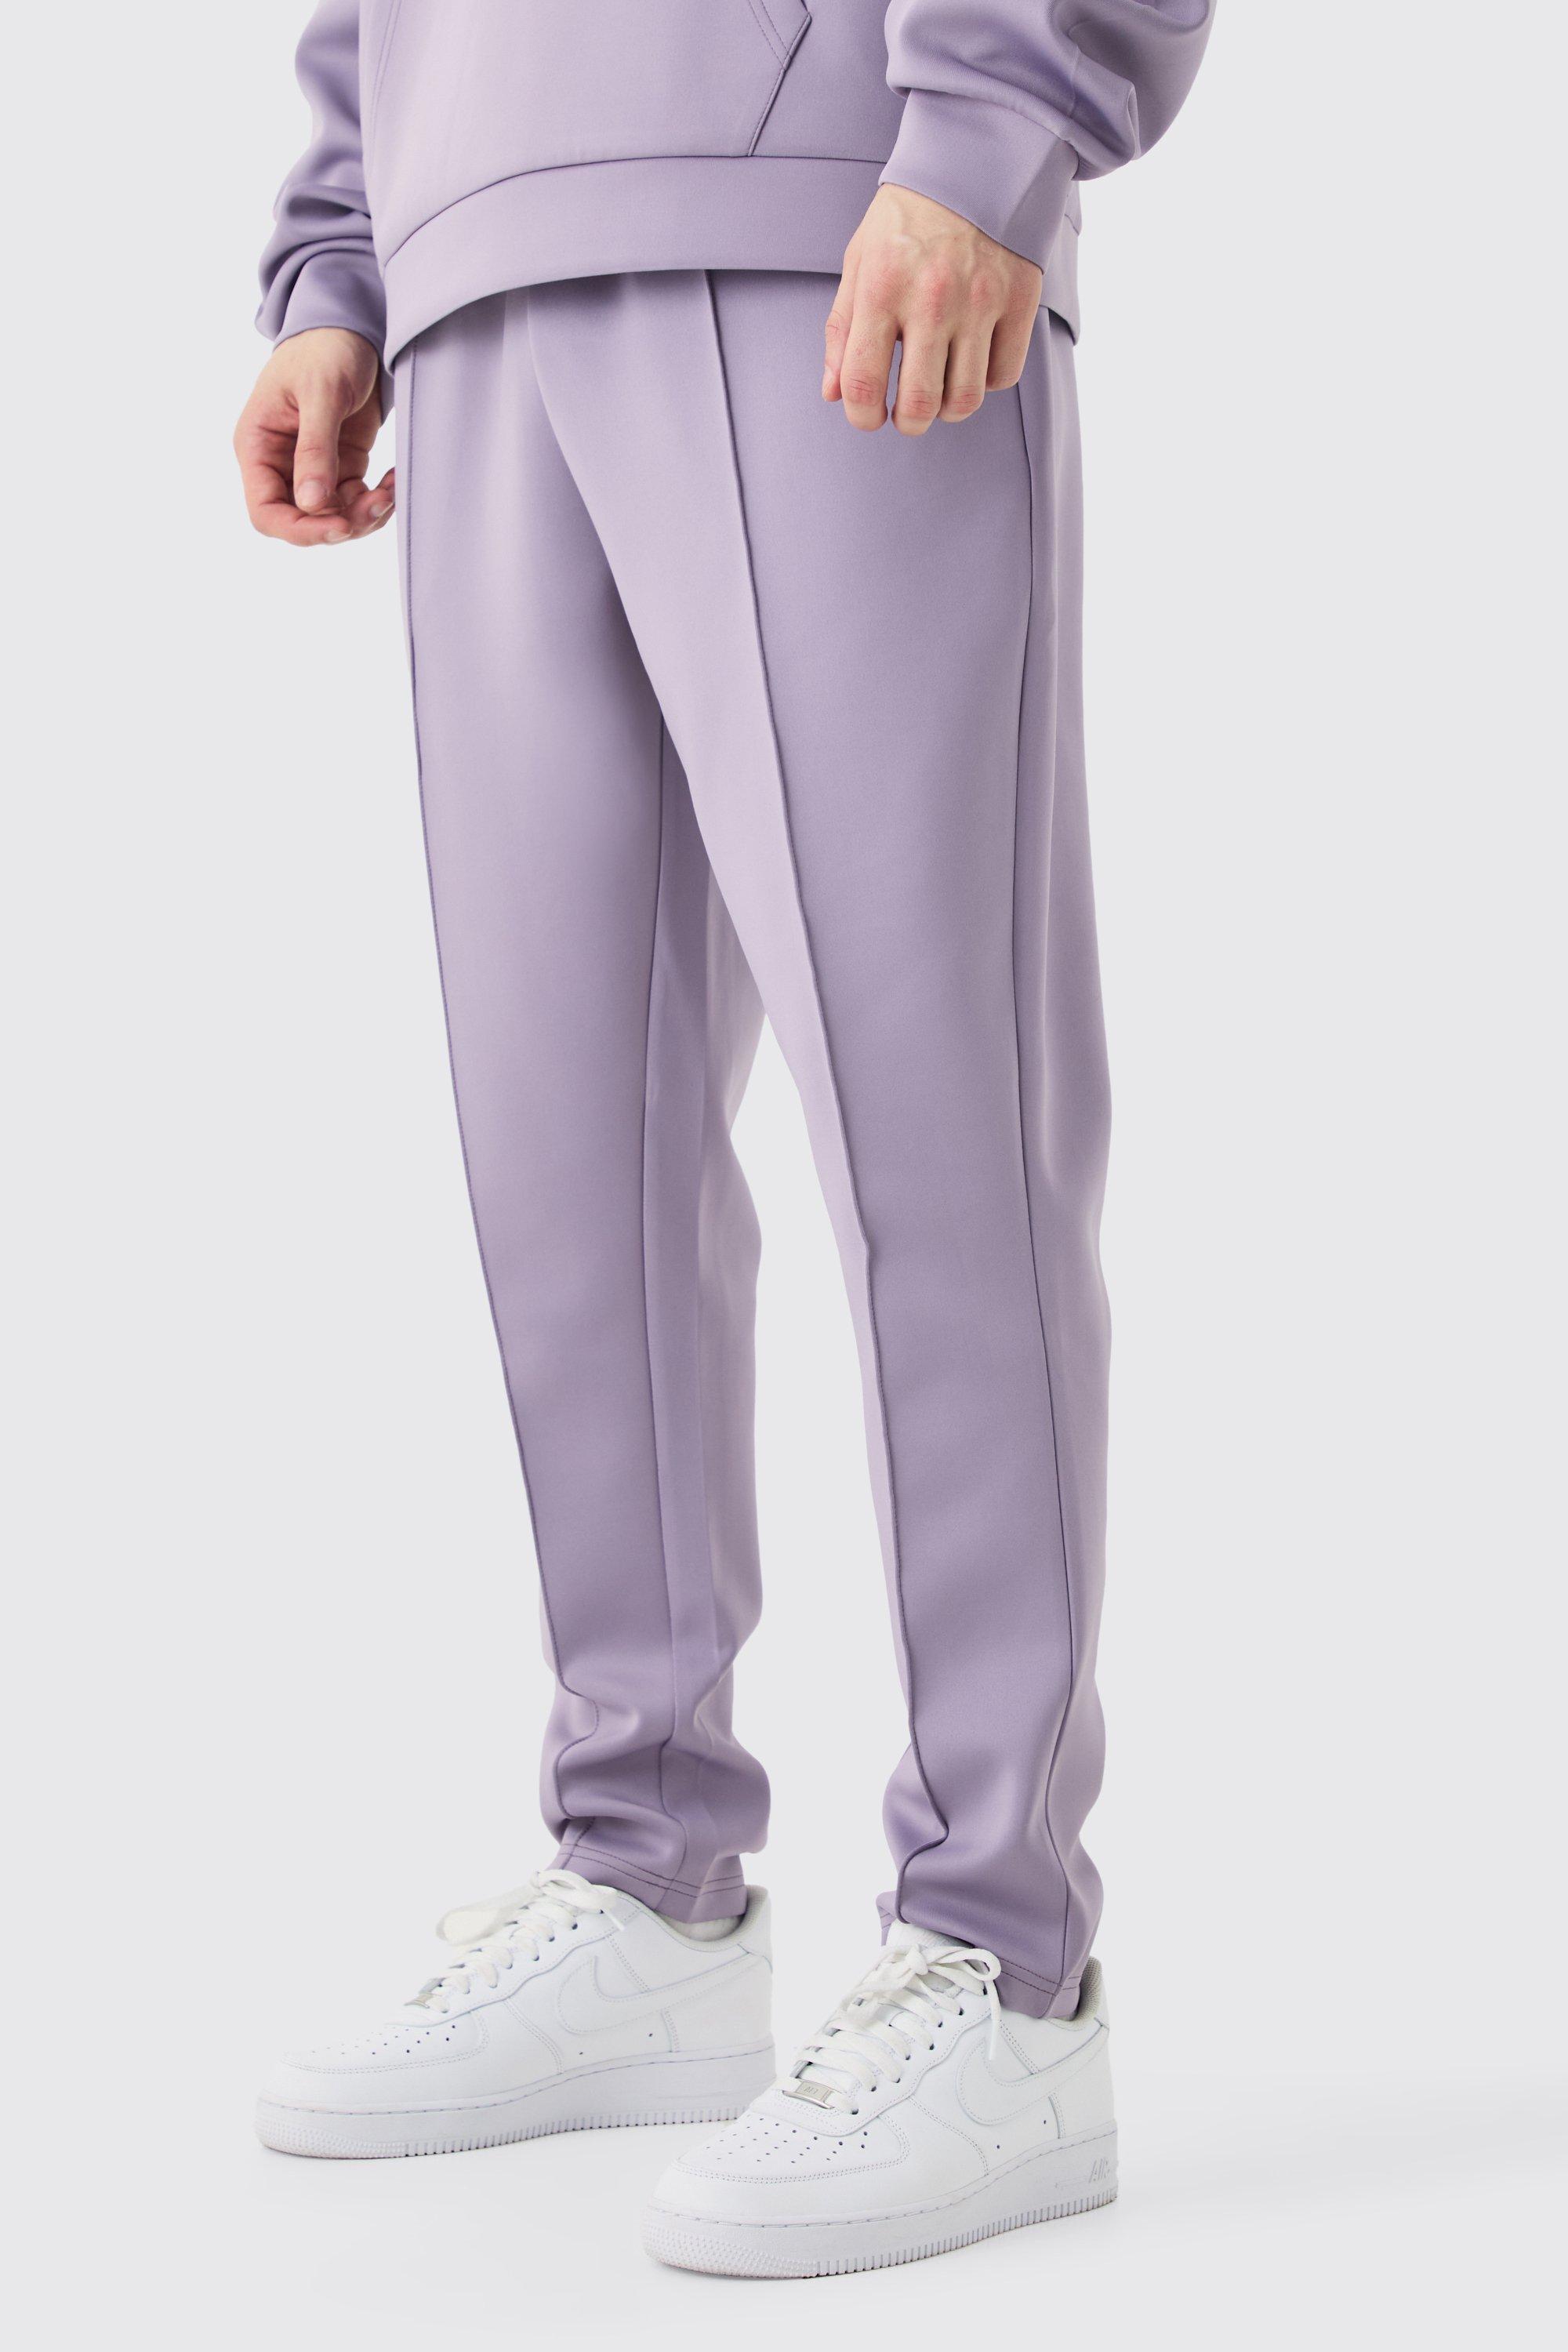 Image of Pantaloni tuta Tall affusolati alla caviglia in Scuba, Purple